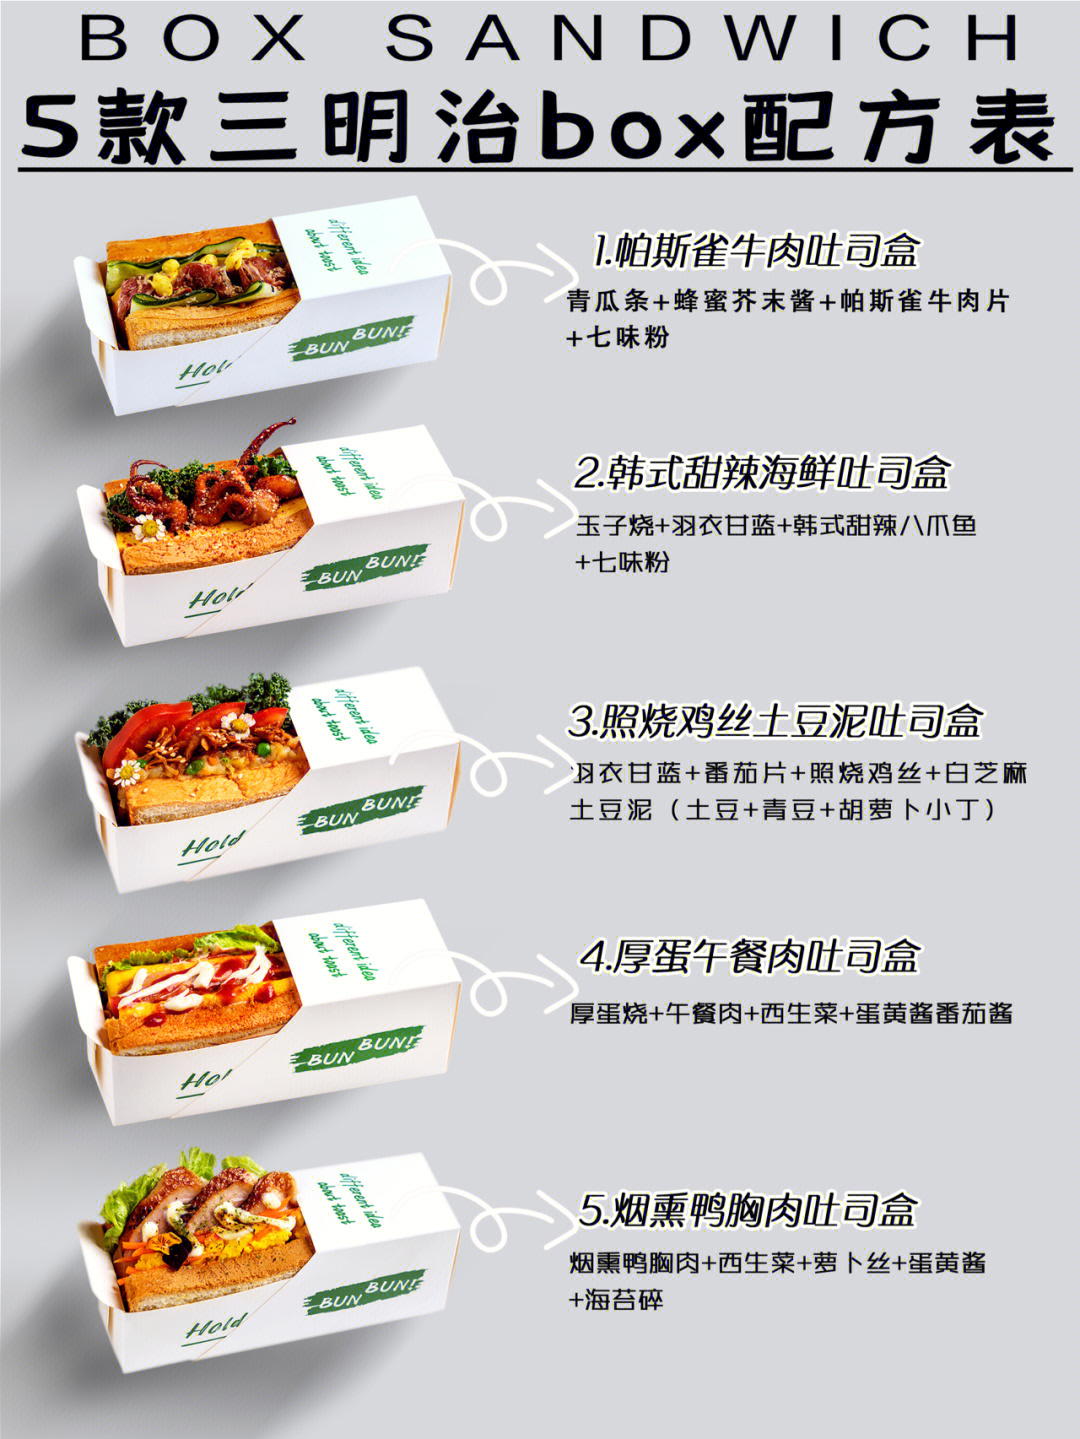 分享566款轻食店韩式box三明治配方